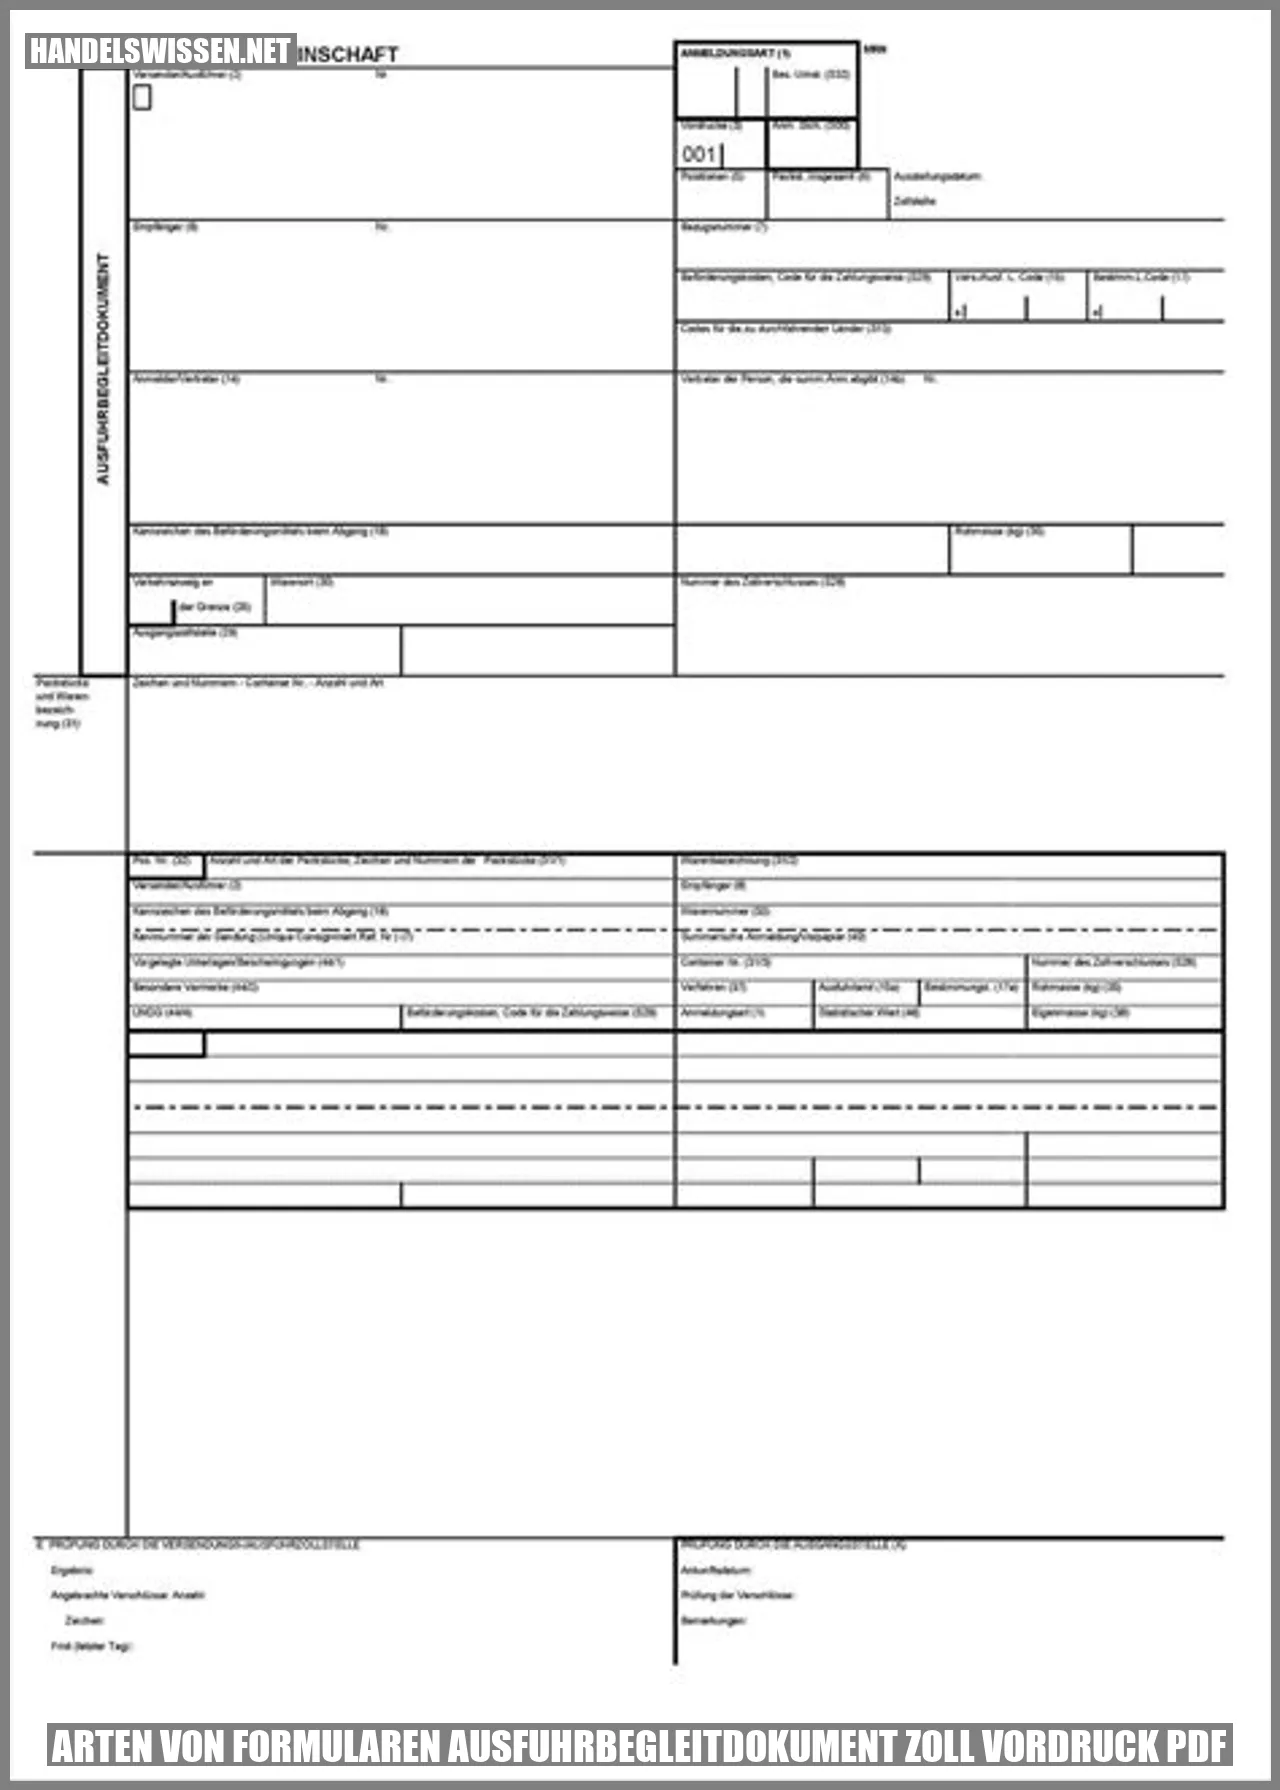 Arten von Formularen ausfuhrbegleitdokument zoll vordruck pdf